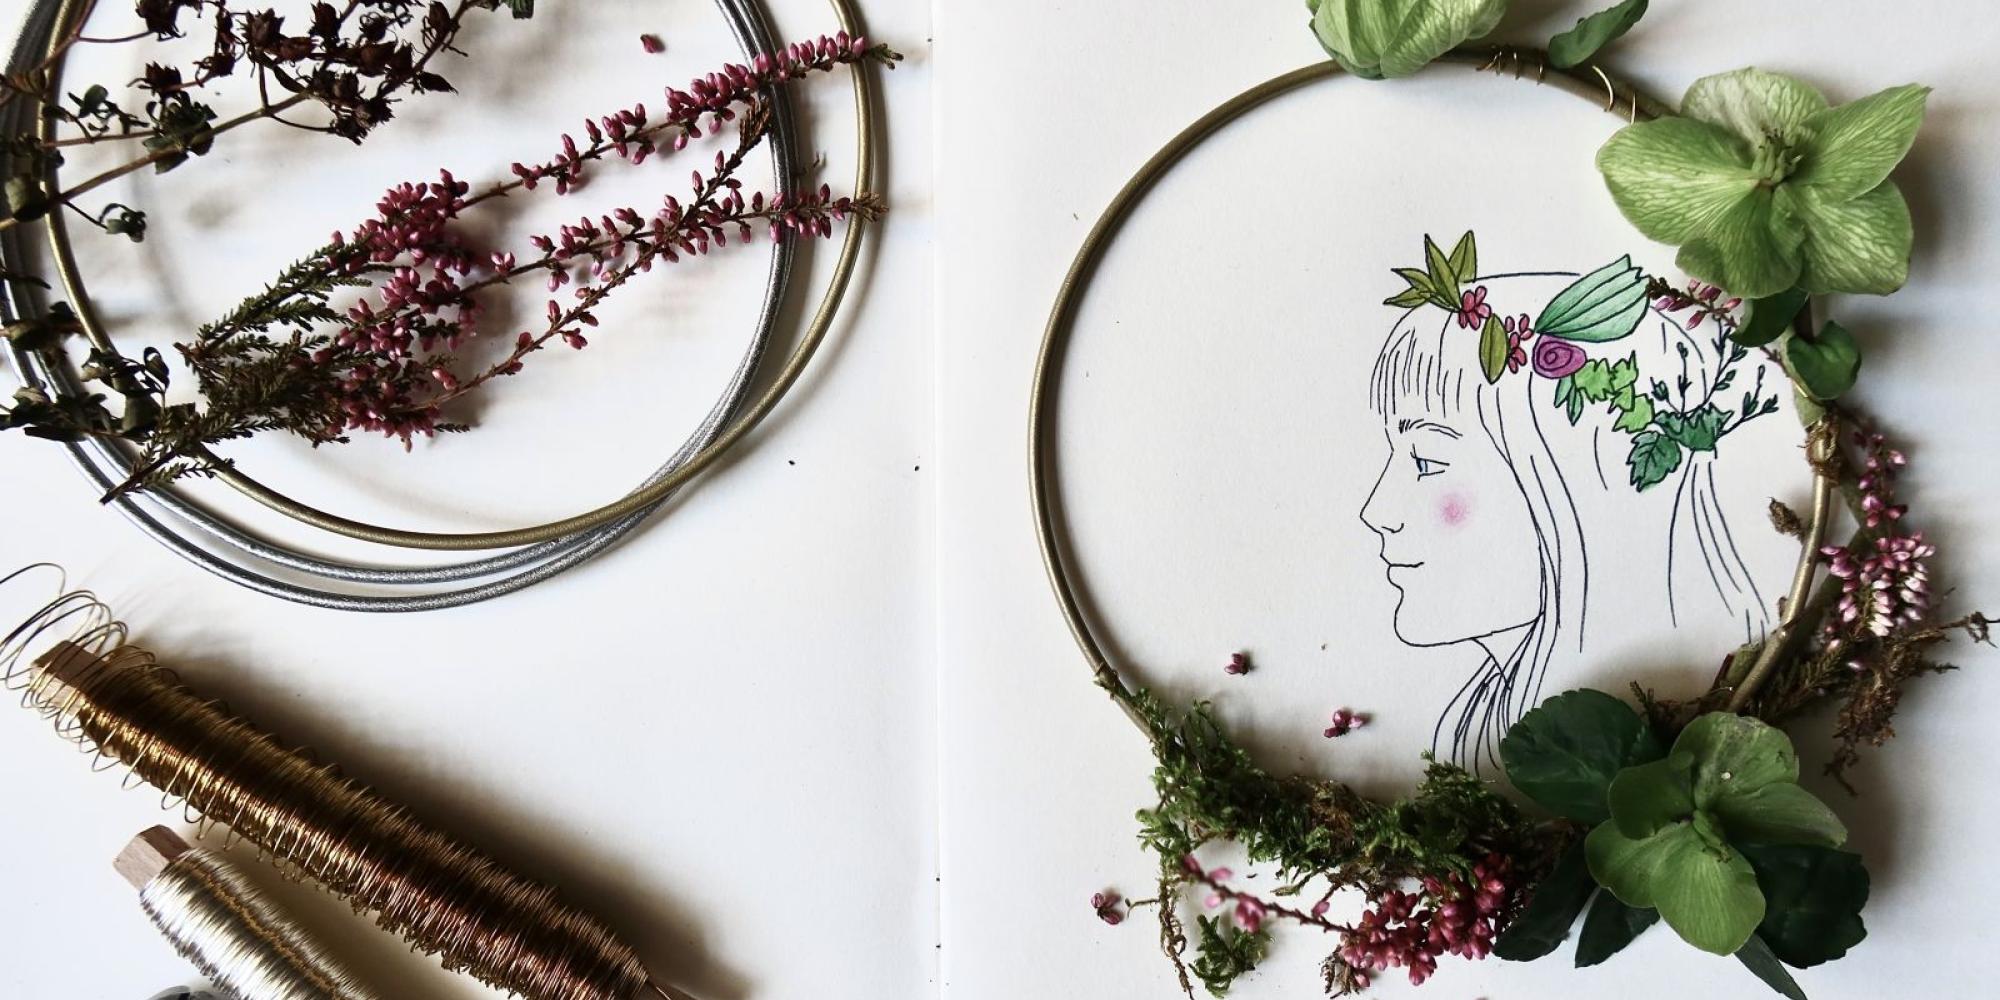 Ein gezeichnetes Mädchen mit einem Blumenkranz im Haar. Außerdem ein echter Blumenkranz mit bunten Blüten.